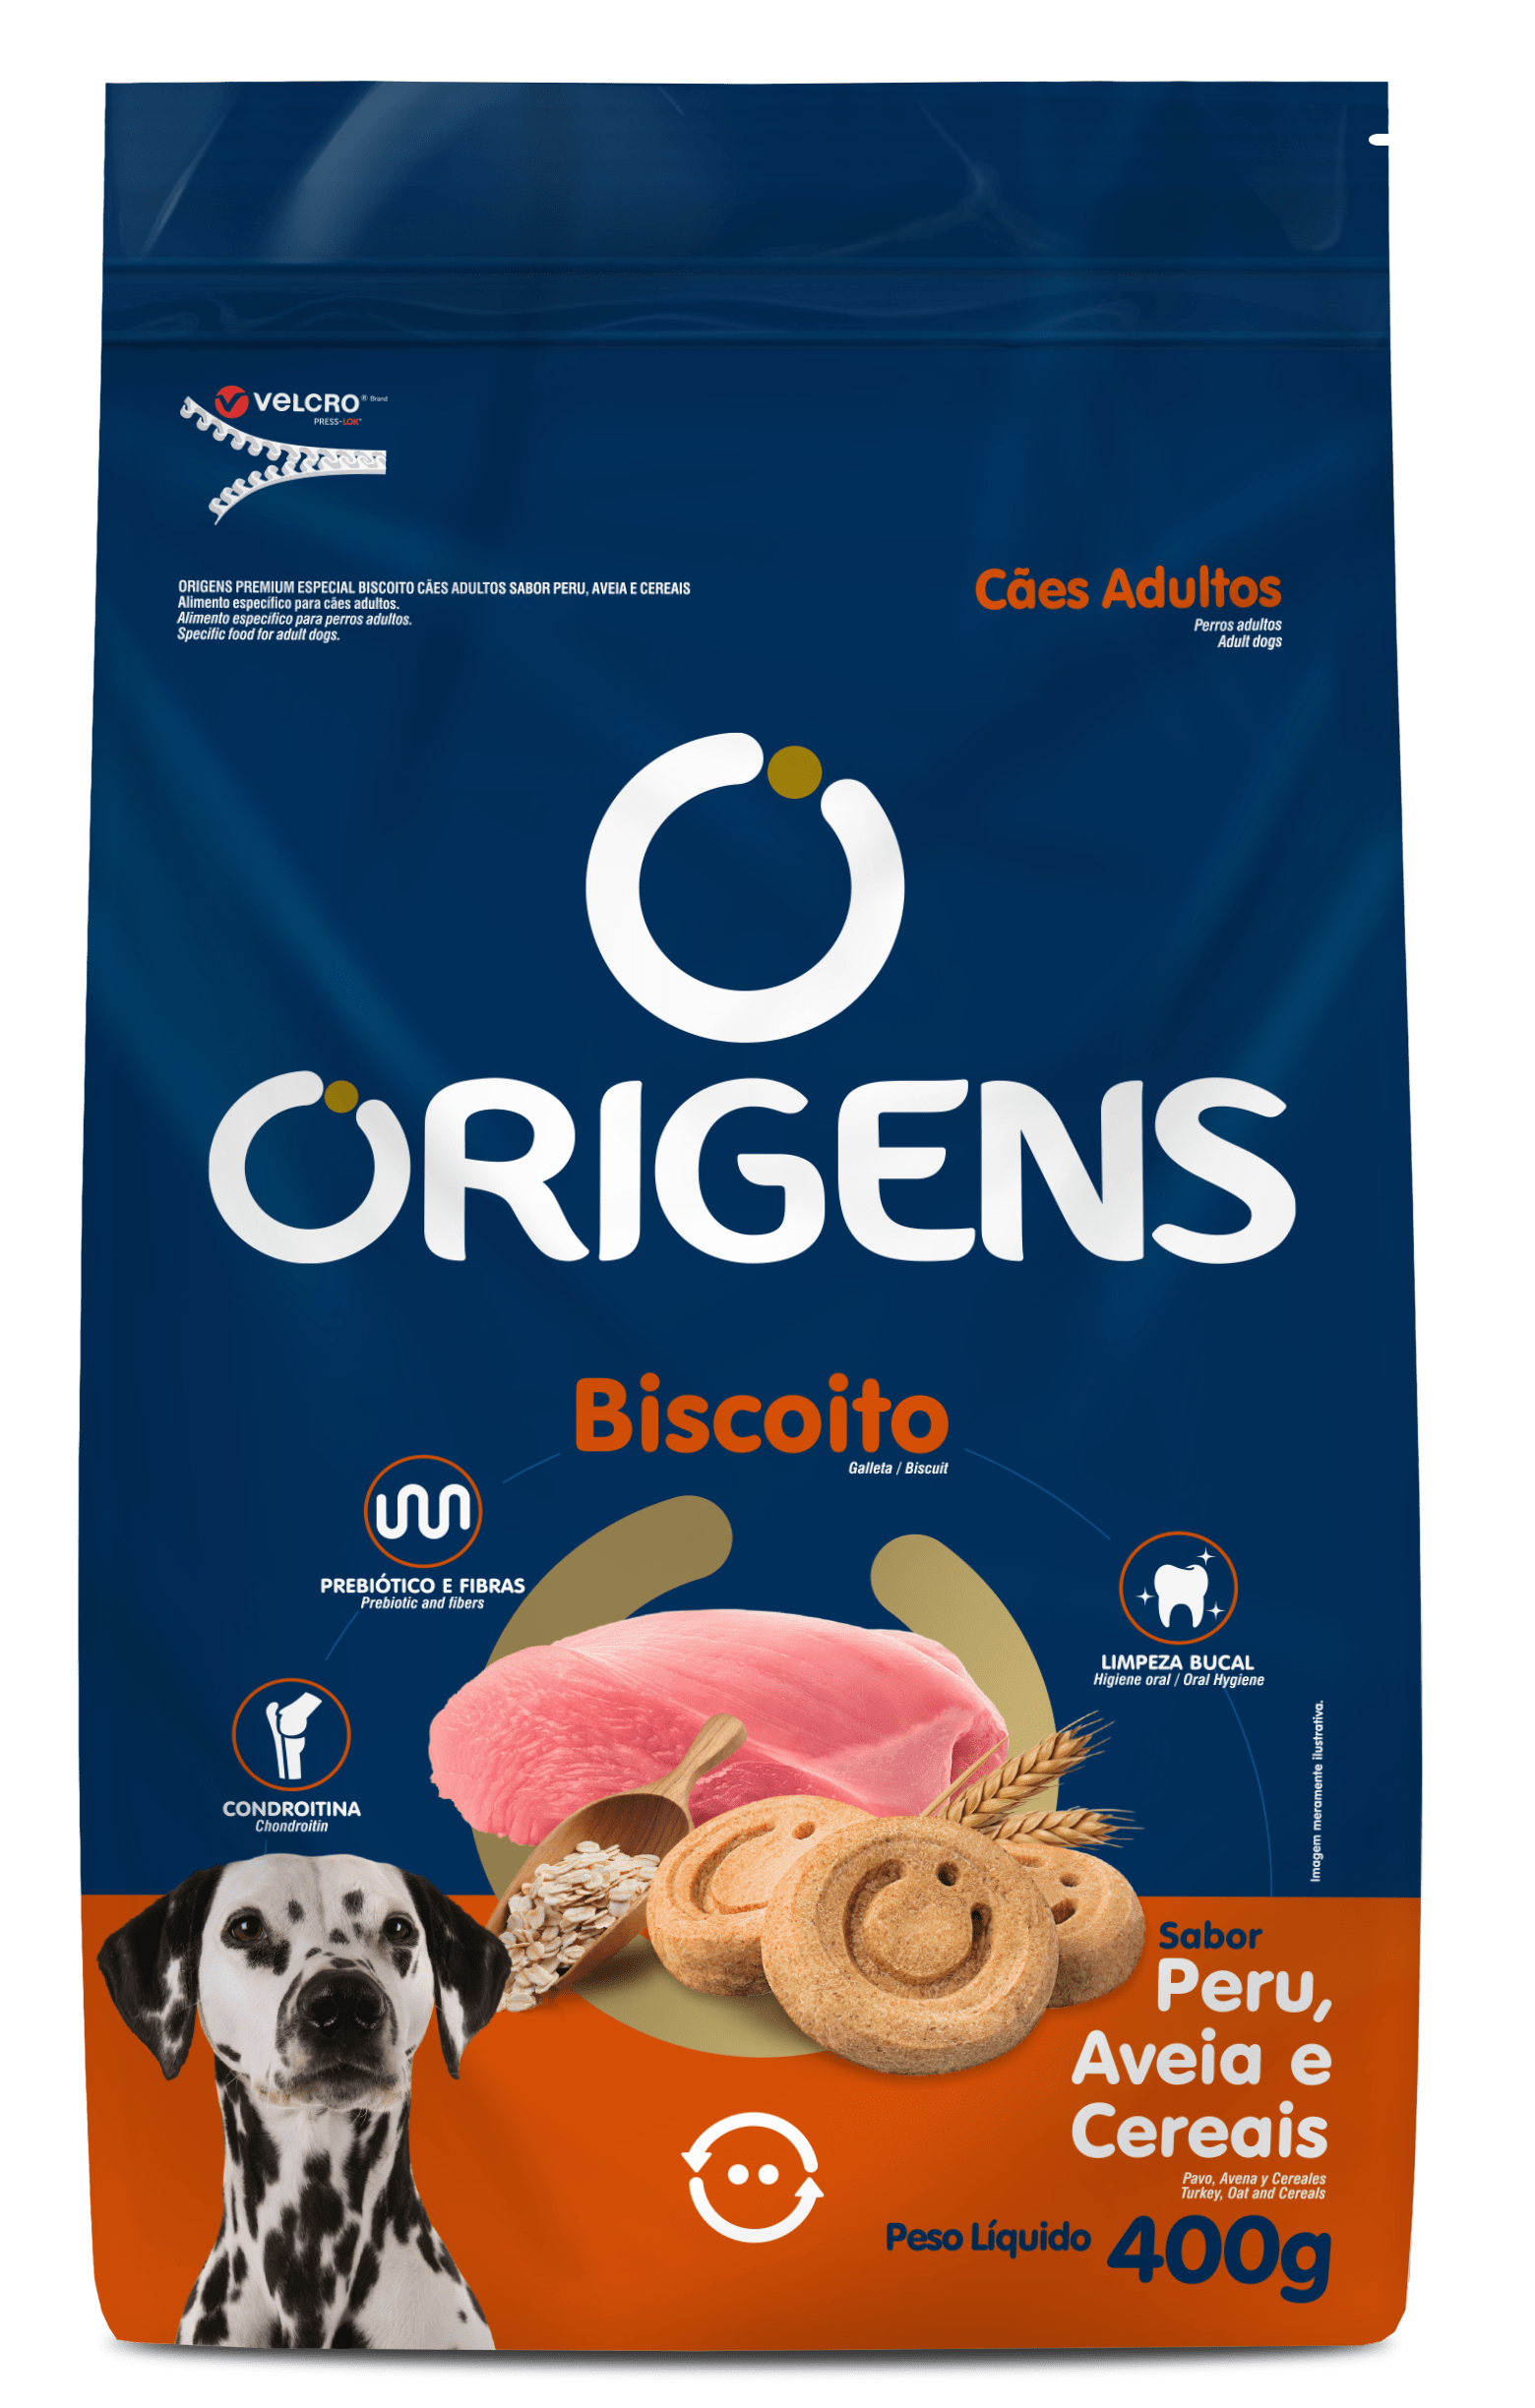 Origens Premium Especial Biscuit Adult Dogs Turkey, Oat and Cereals Flavor